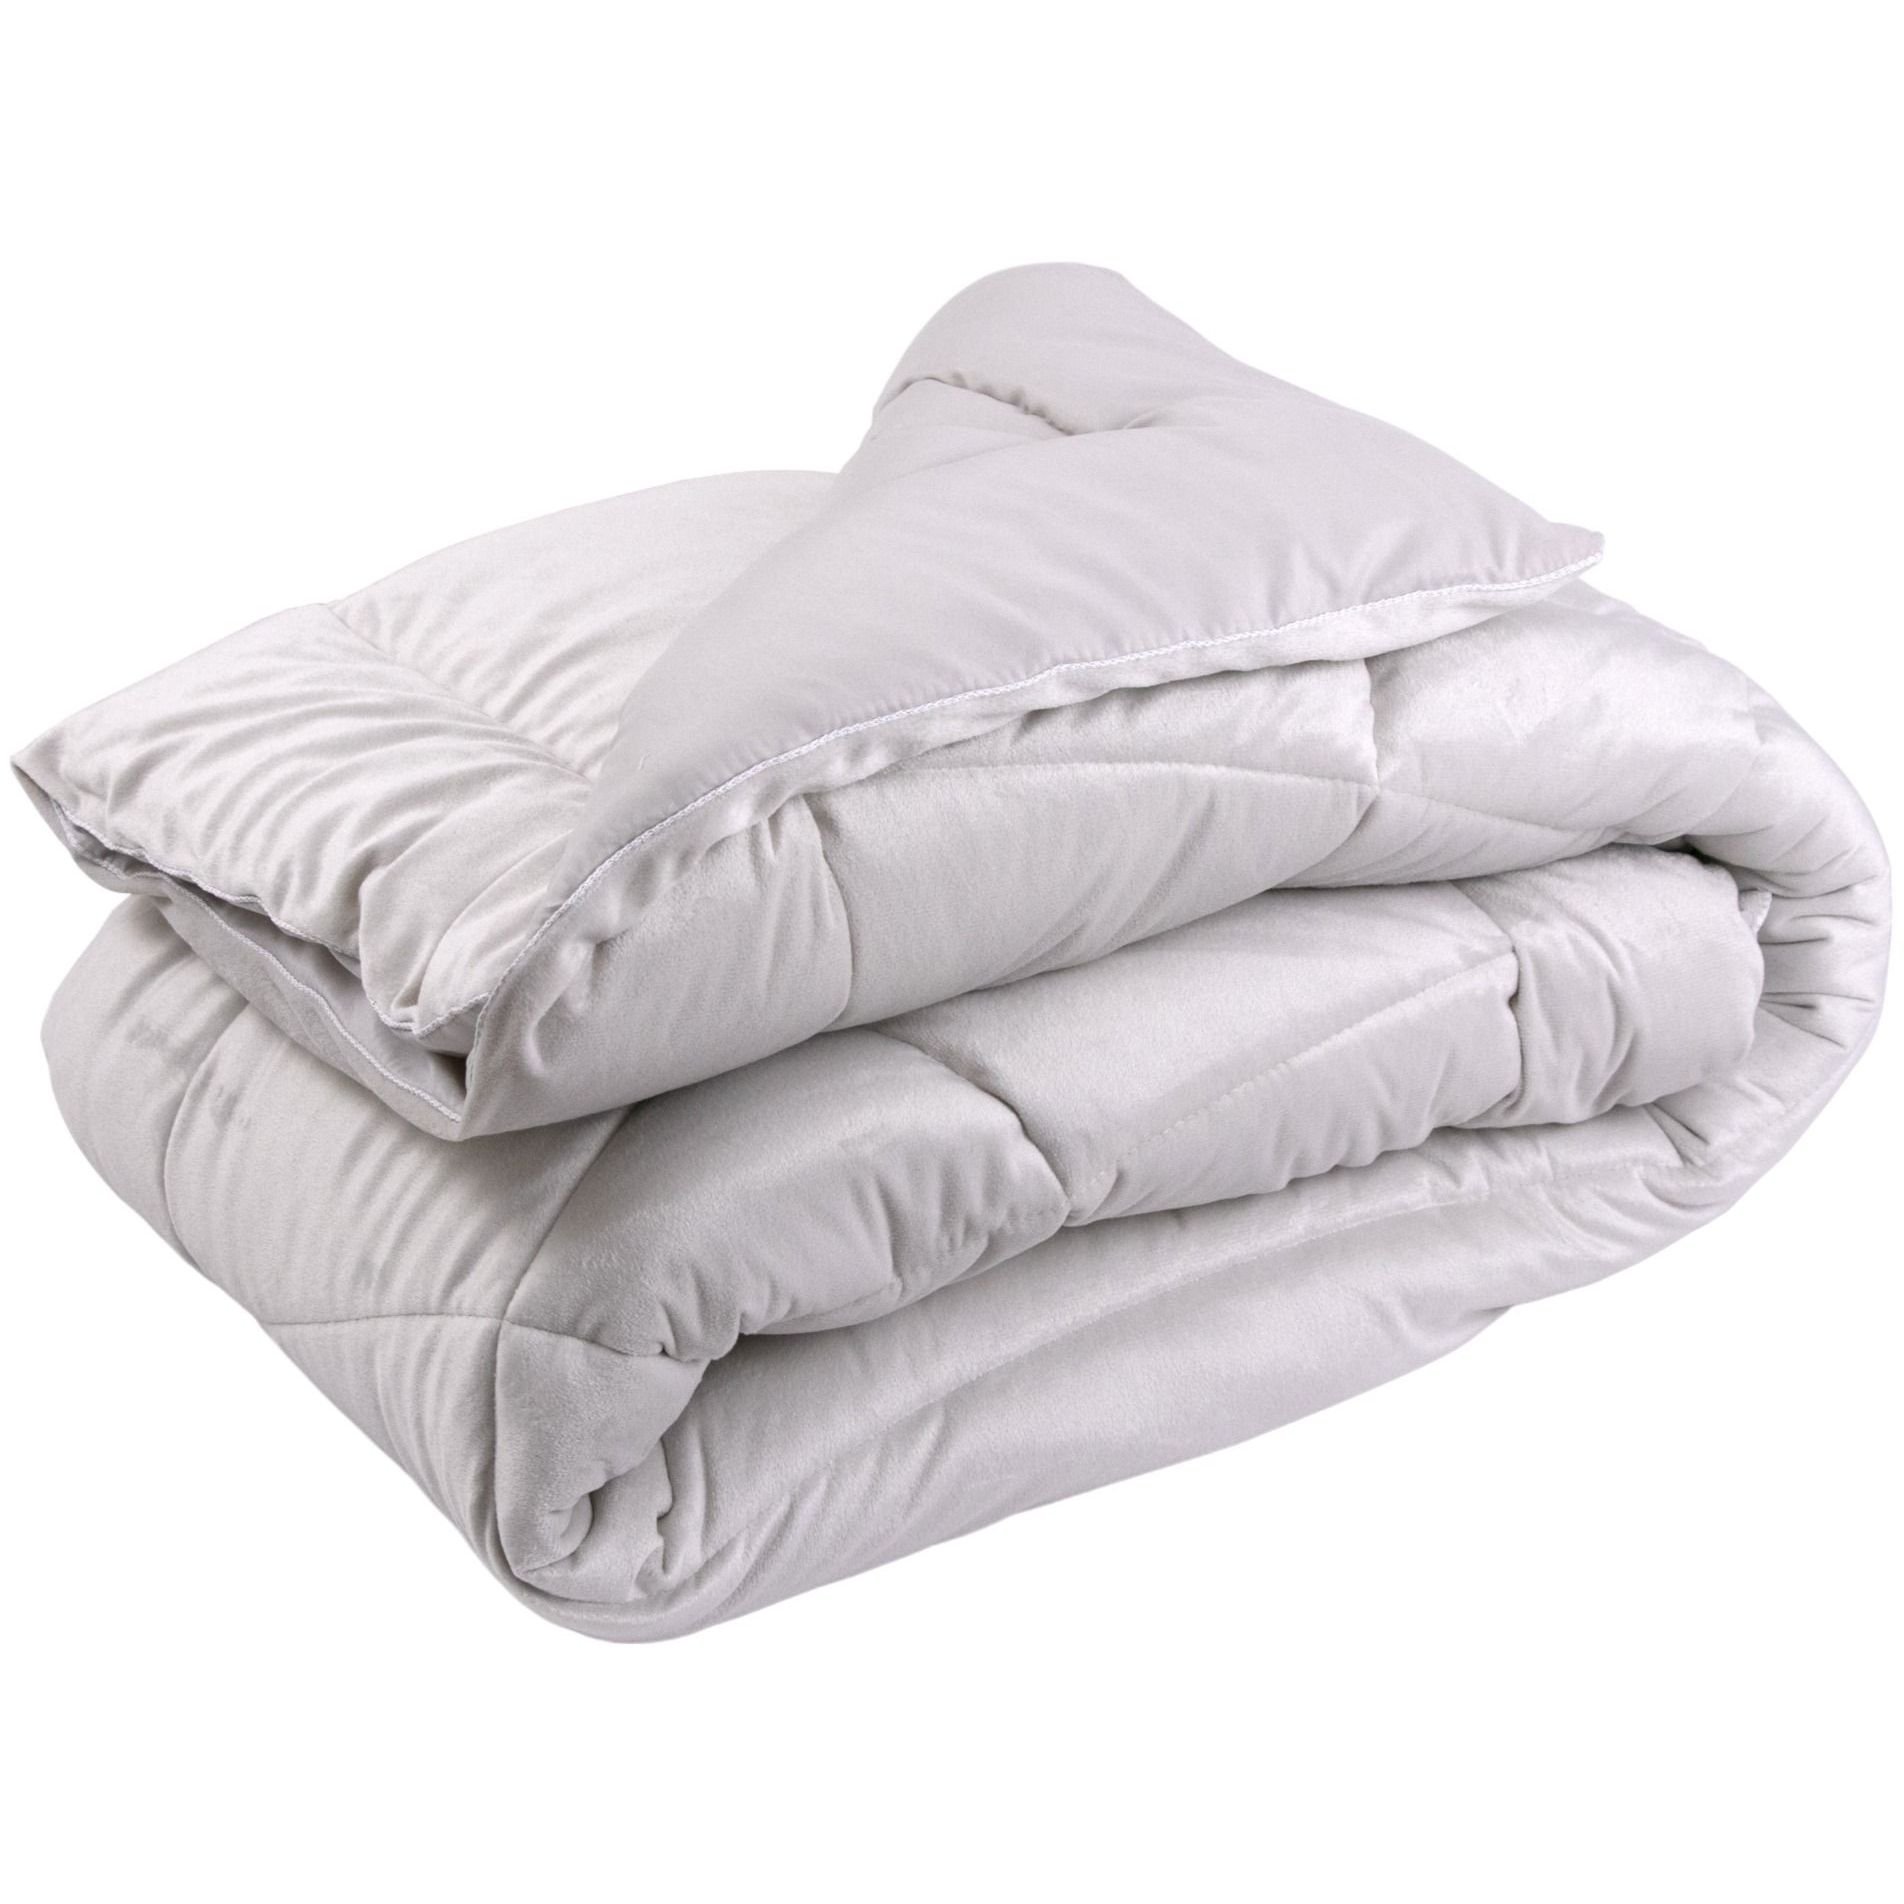 Одеяло велюровое Руно Soft Pearl с силиконовым наполнителем, 140х205, бежевое (321.55_Soft Pearl) - фото 1